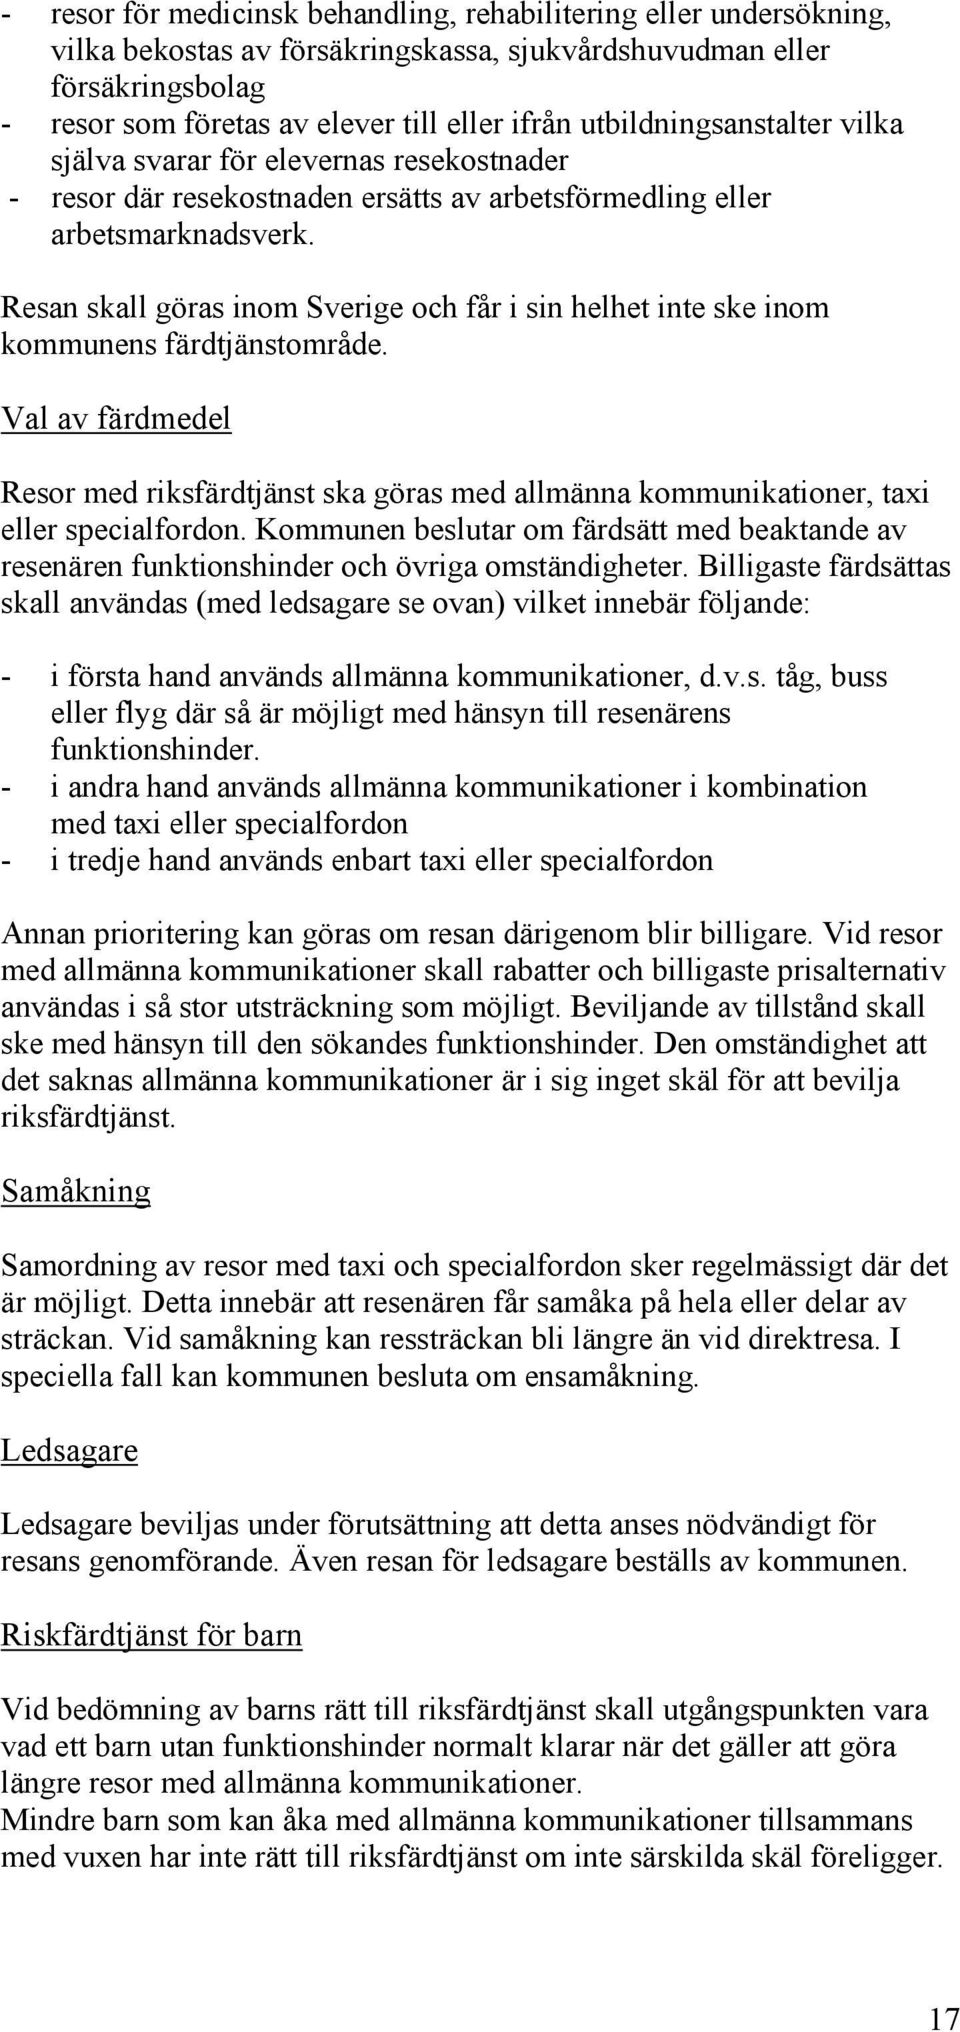 Resan skall göras inom Sverige och får i sin helhet inte ske inom kommunens färdtjänstområde. Val av färdmedel Resor med riksfärdtjänst ska göras med allmänna kommunikationer, tai eller specialfordon.